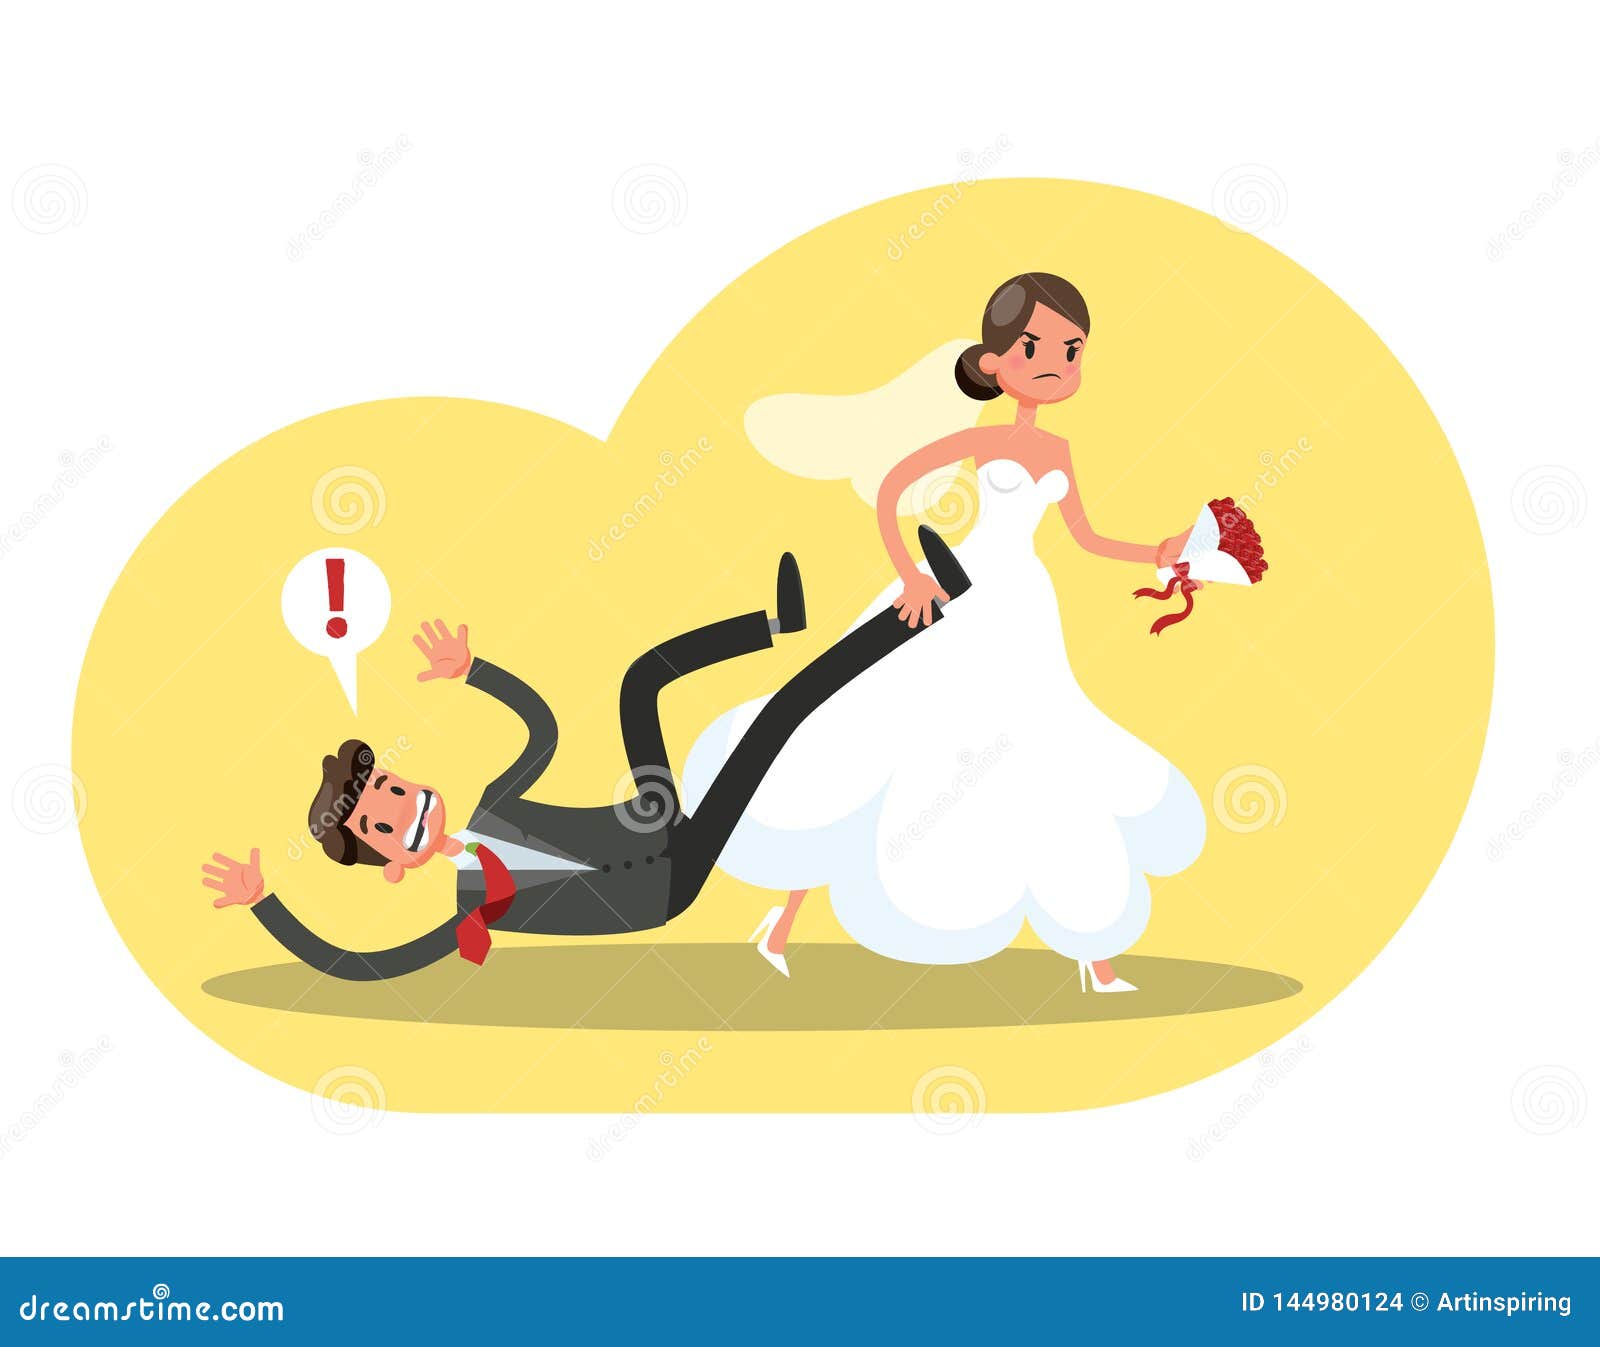 Bride Dragging Groom Wedding Stock Illustrations – 11 Bride Dragging Groom  Wedding Stock Illustrations, Vectors & Clipart - Dreamstime